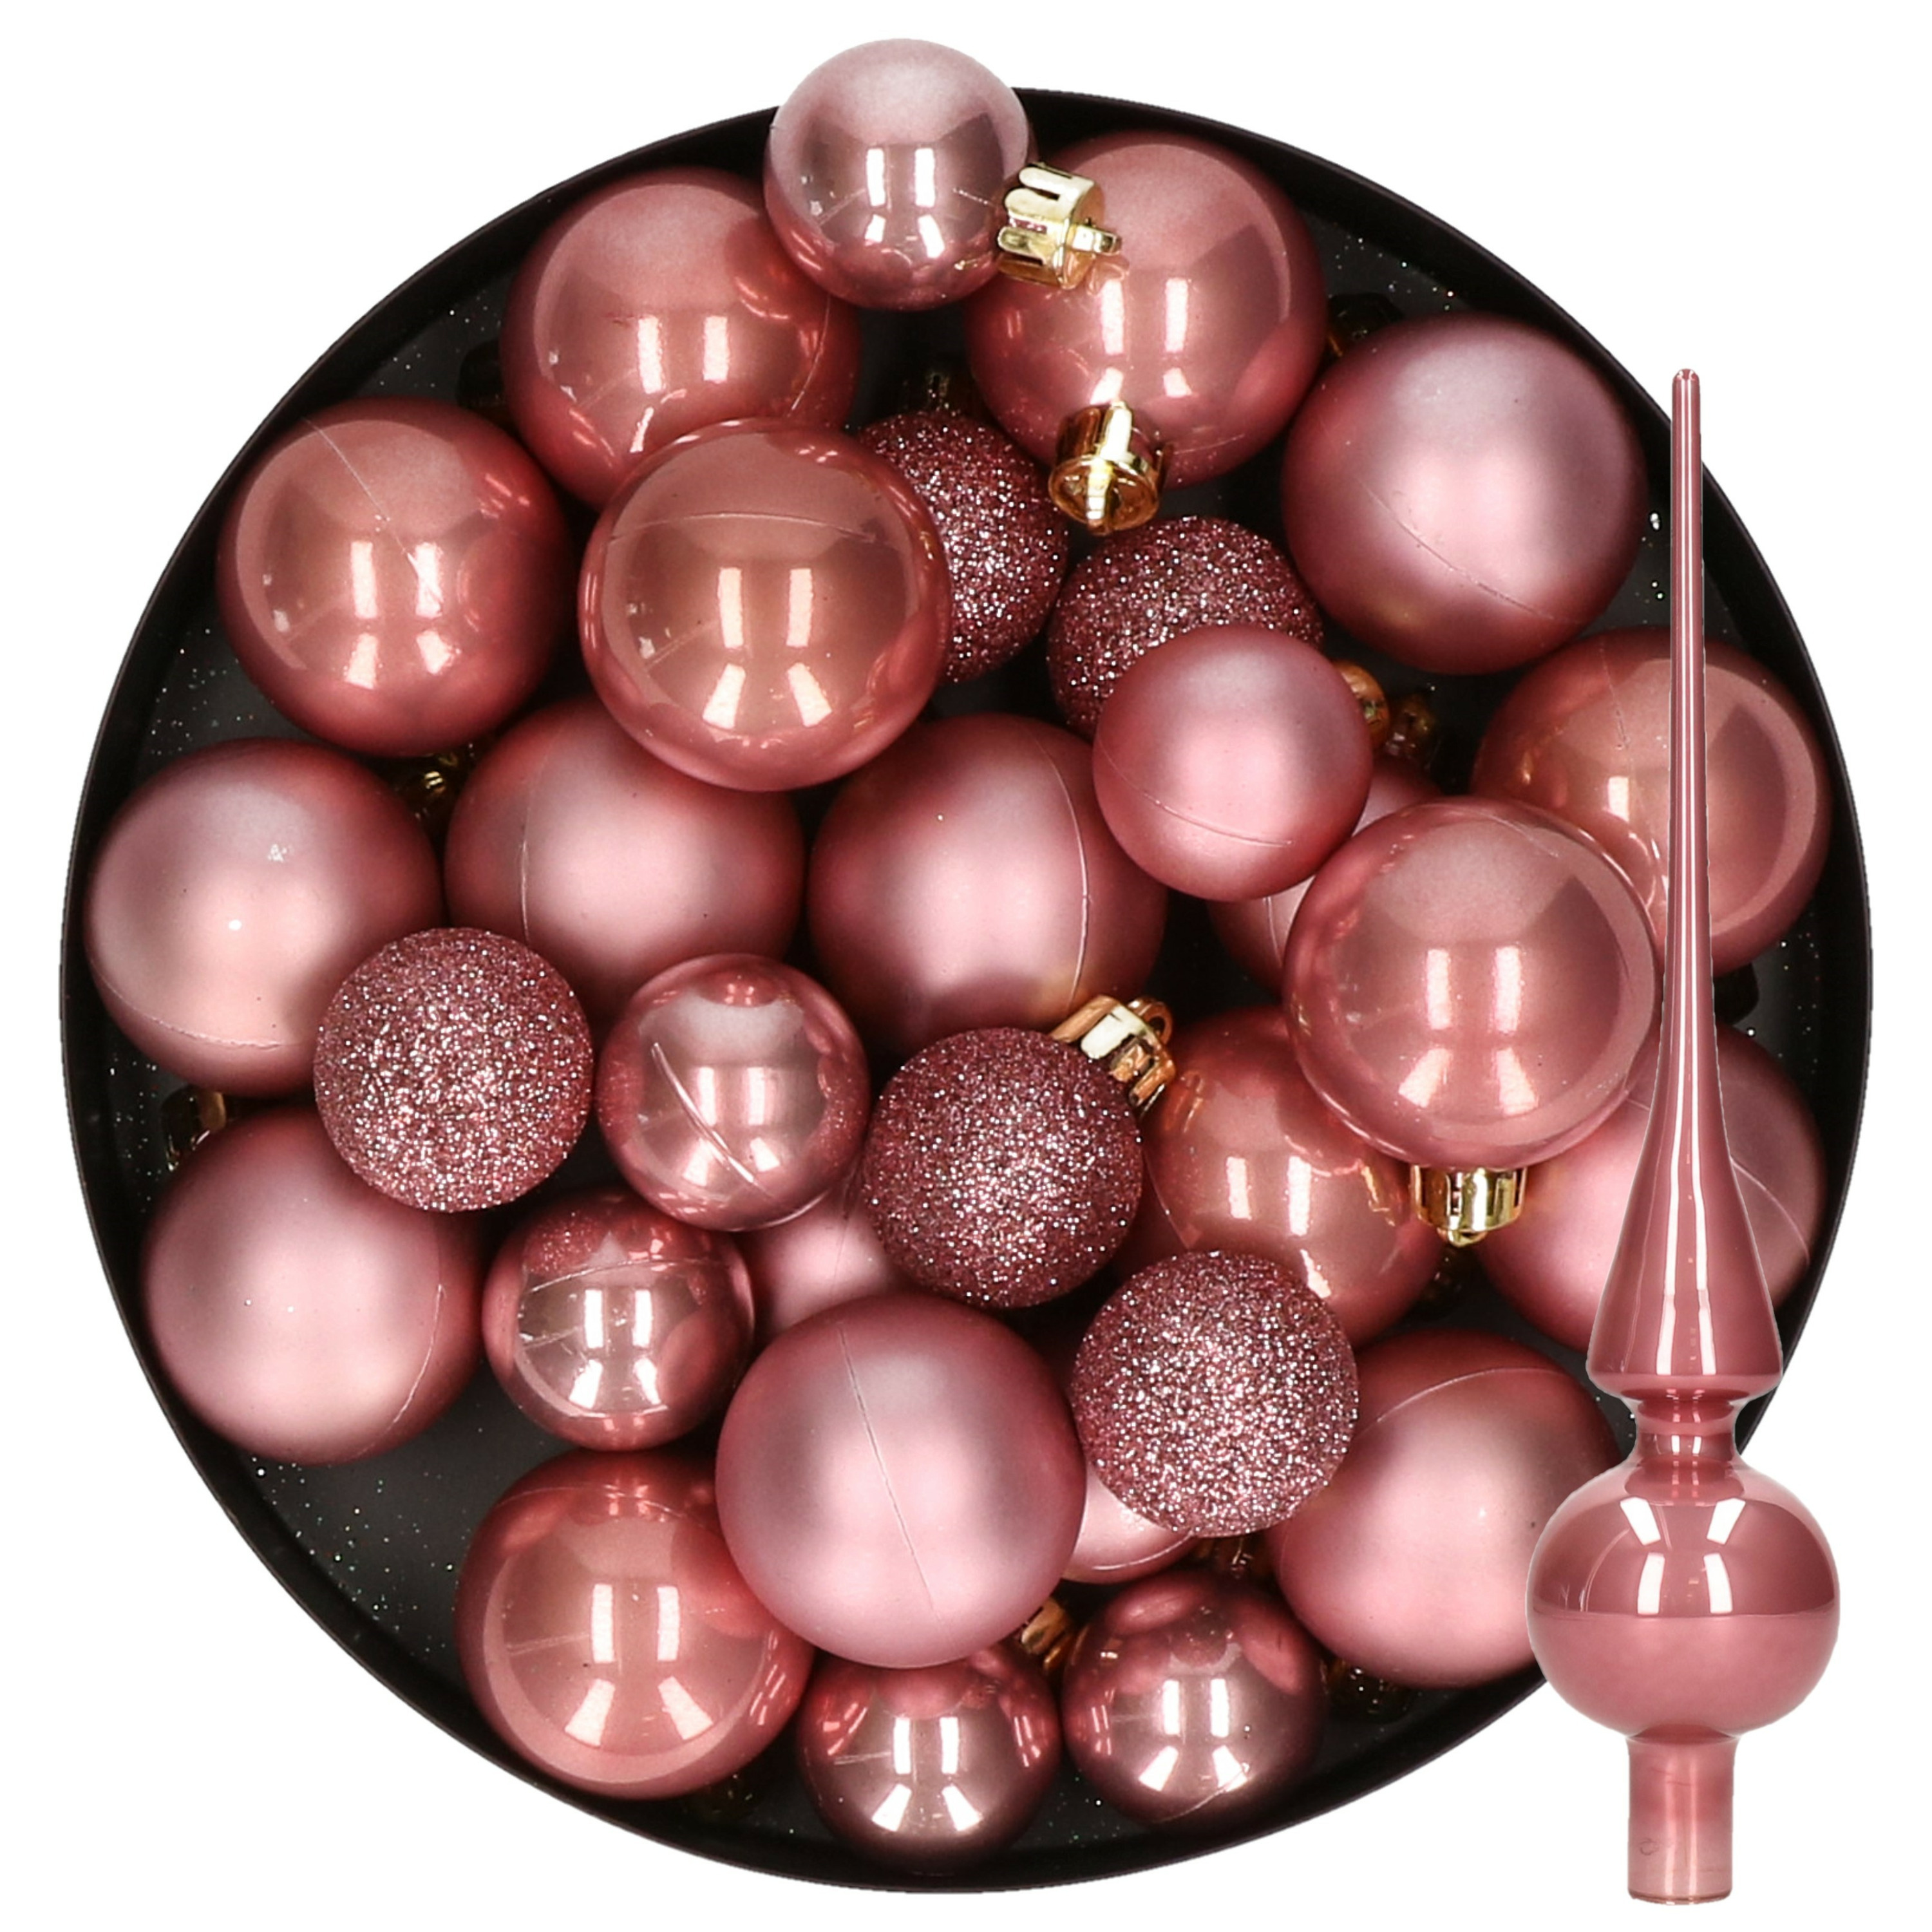 Kerstversiering kunststof kerstballen met piek oud roze 6-8-10 cm pakket van 49x stuks